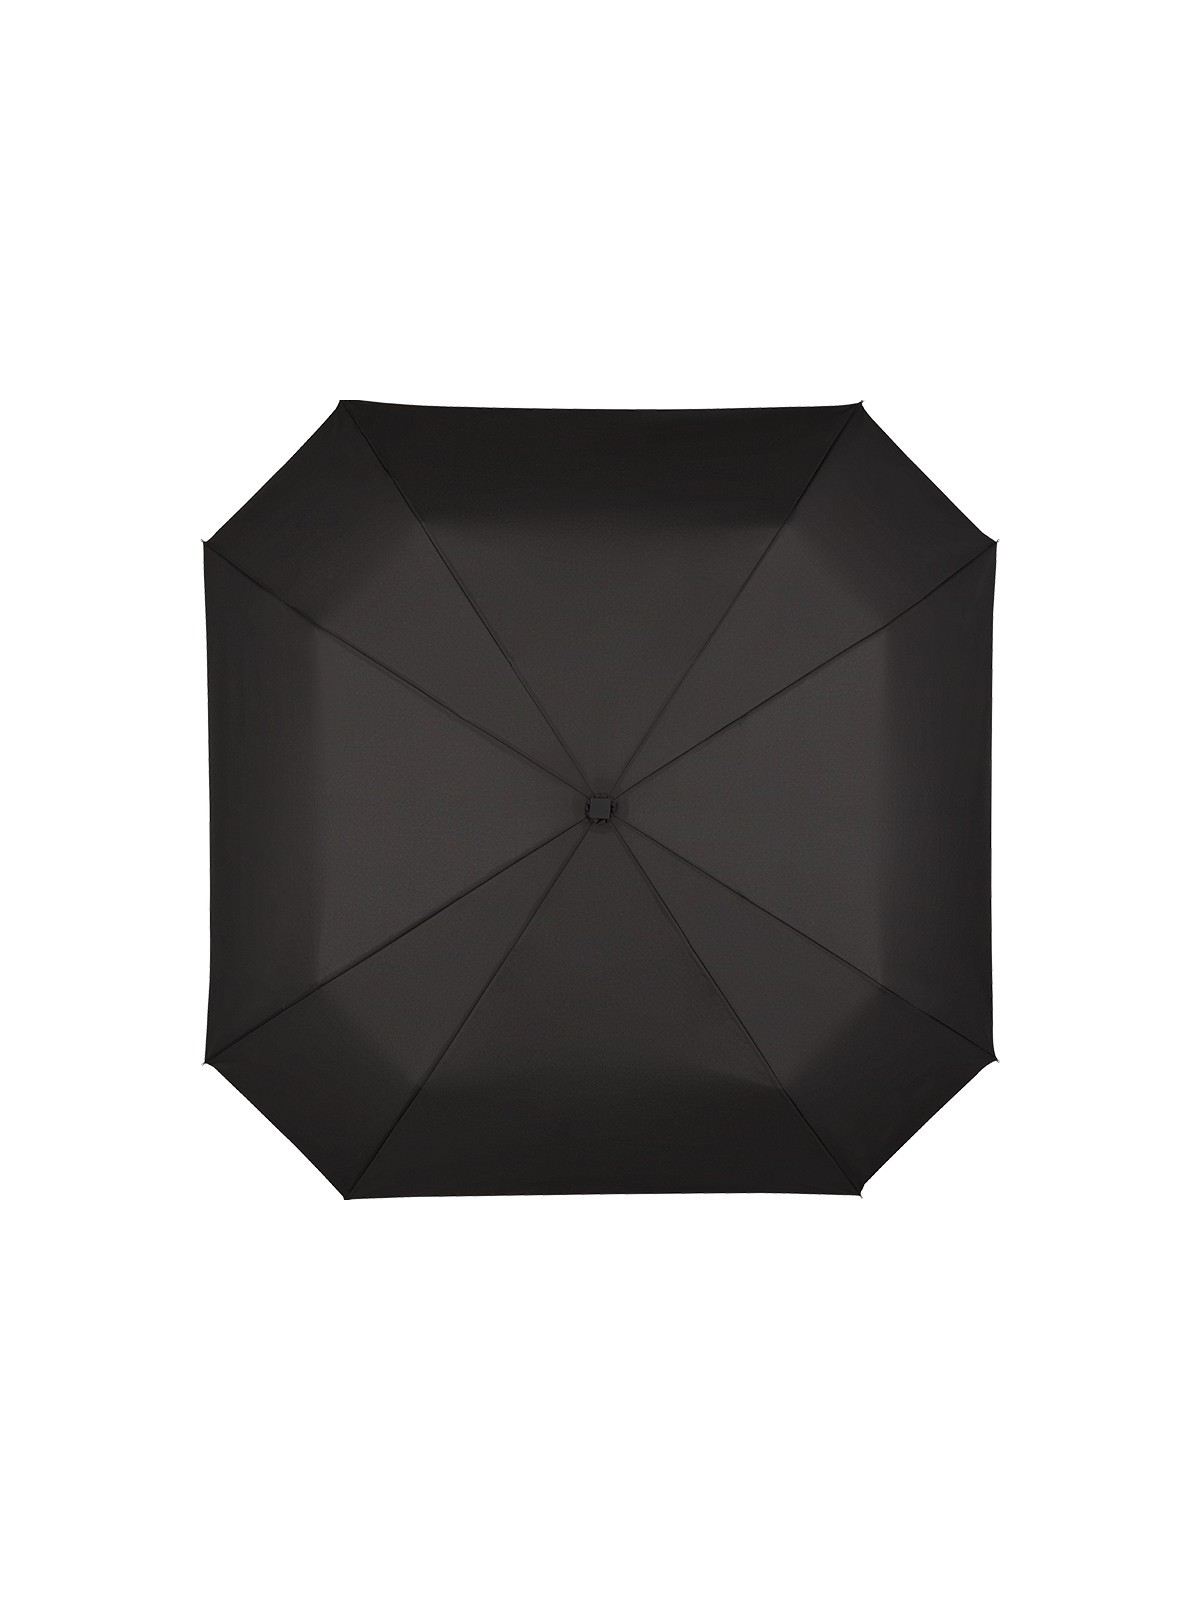 75-015 Parapluie de poche publicitaire FARE carré personnalisé